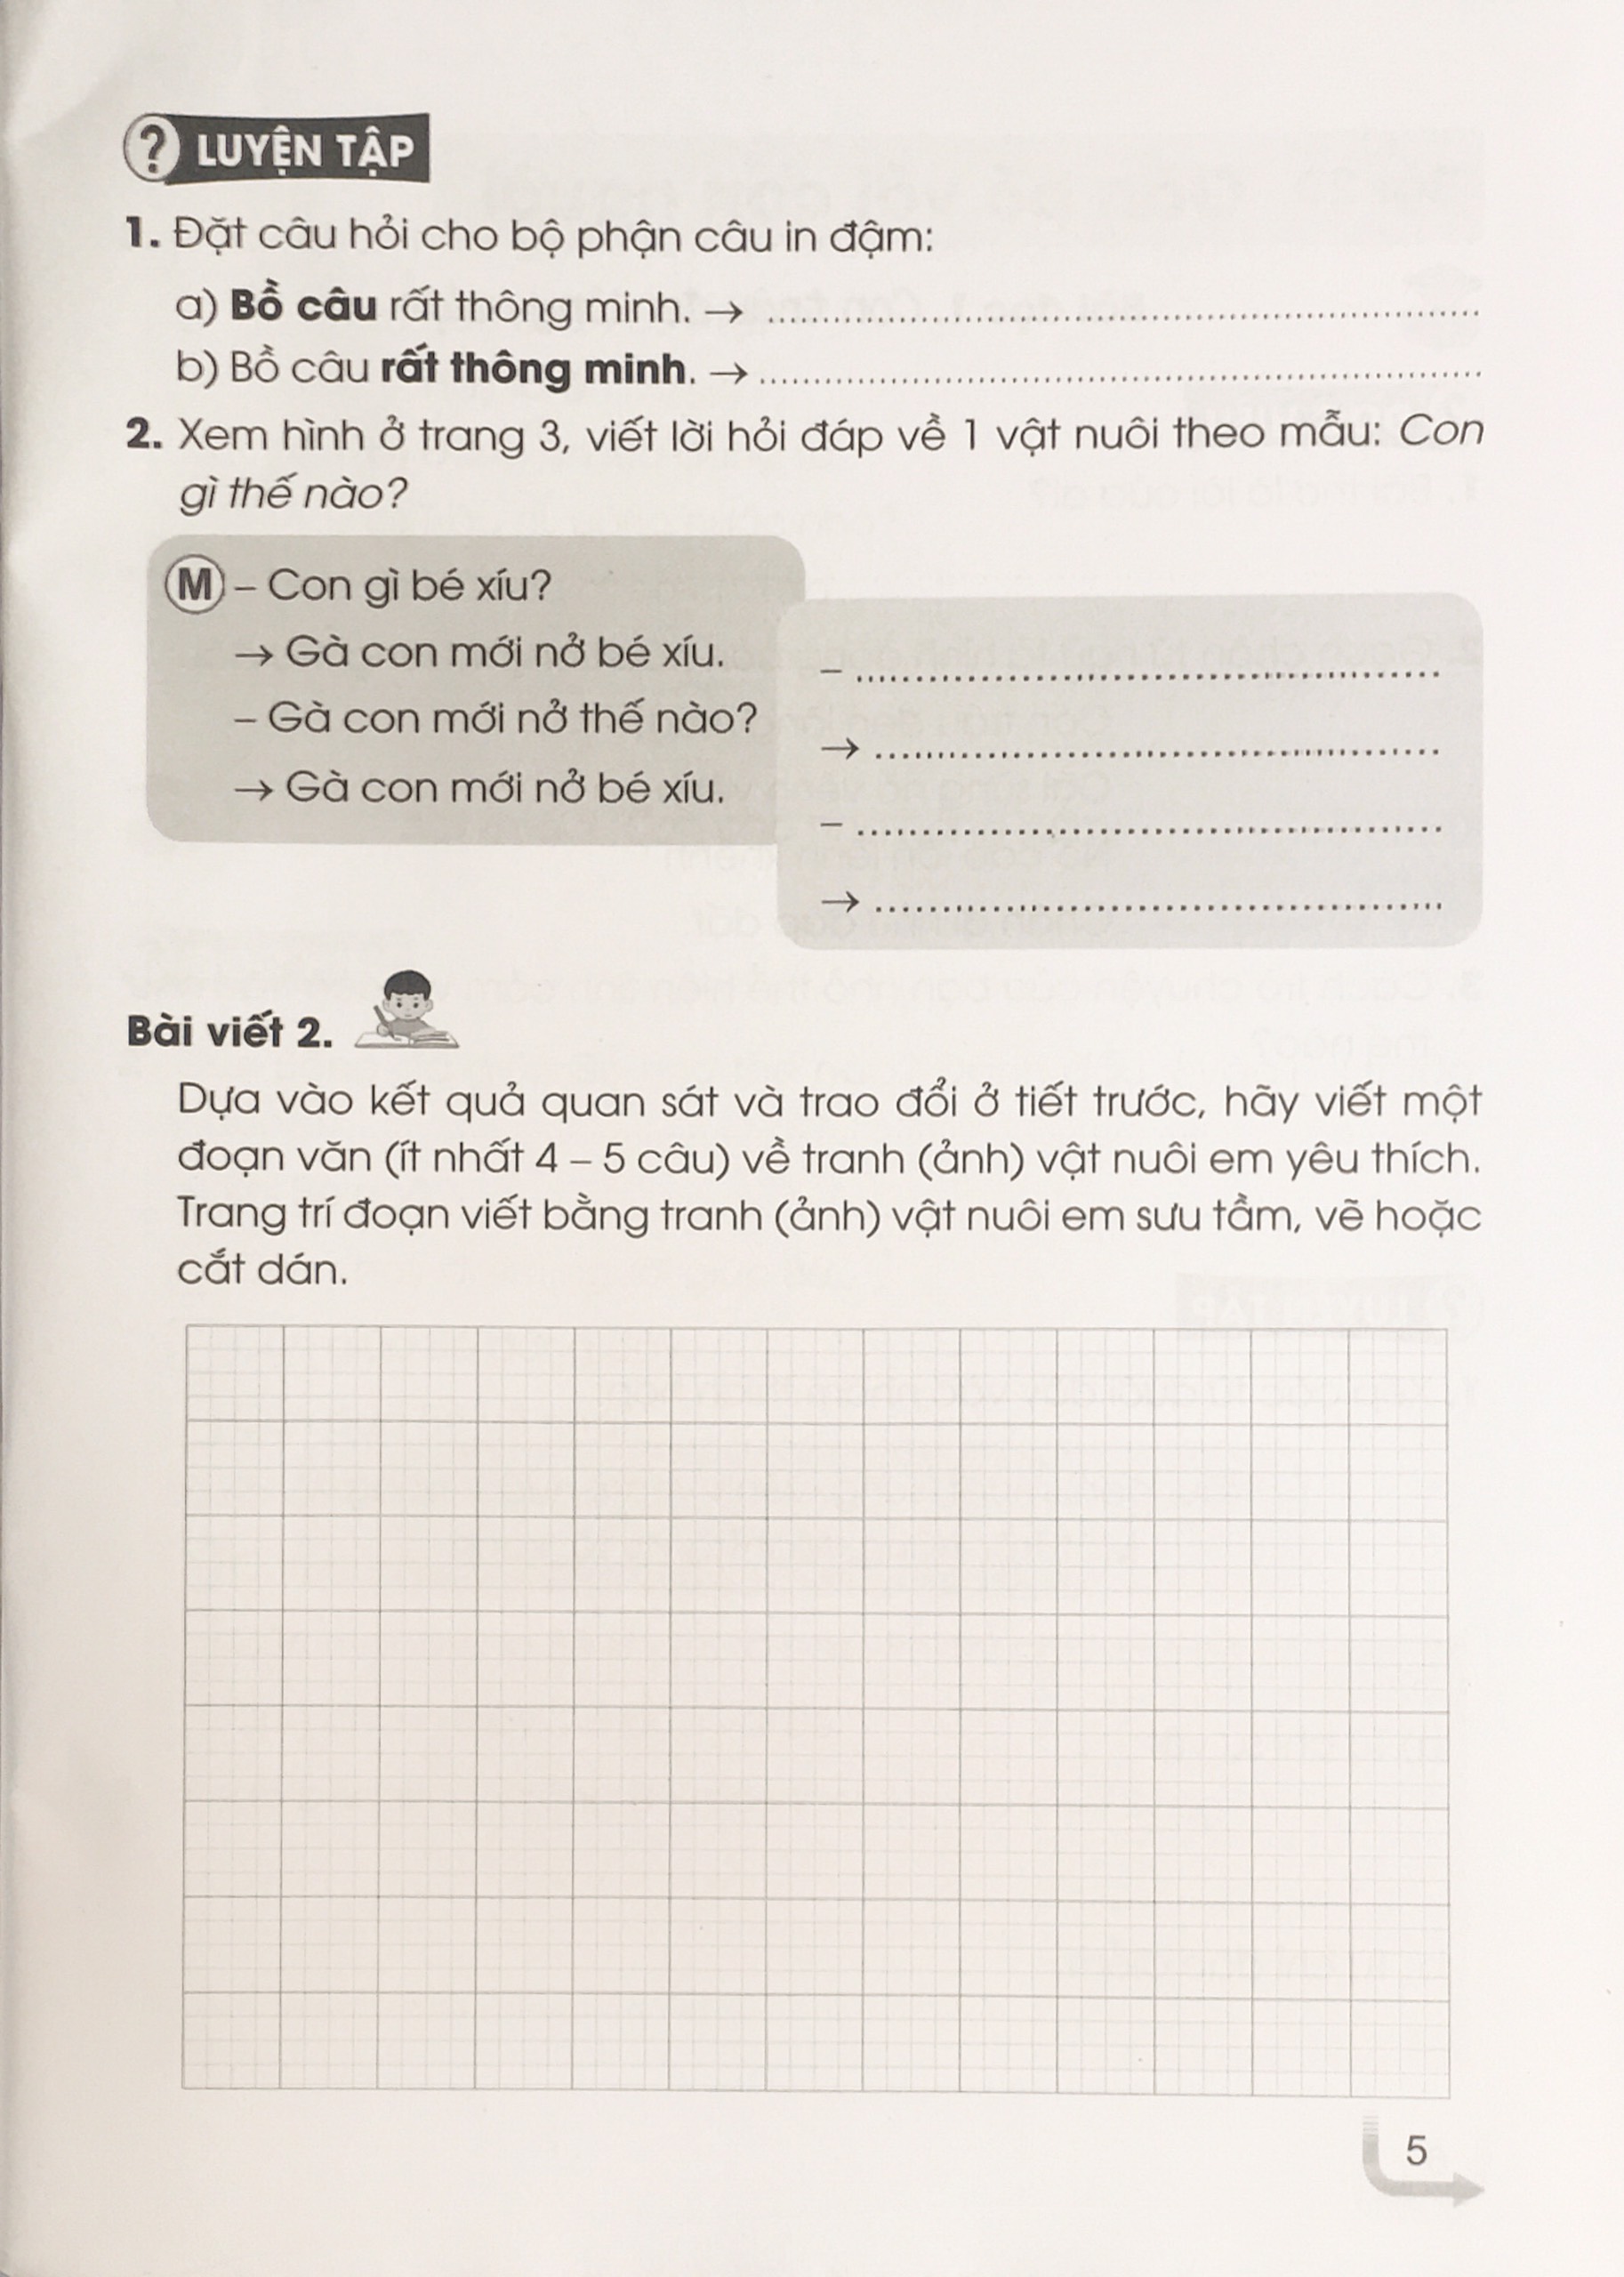 Hãy khám phá cuốn sách tiếng Việt lớp 2 với những bài học và trò chơi giúp các em học sinh vui tươi hơn trong quá trình học tập. Qua từng trang sách, các em có thể nắm được những kiến thức bổ ích và vô cùng thú vị. Click vào đây để xem hình ảnh về cuốn sách này nhé!